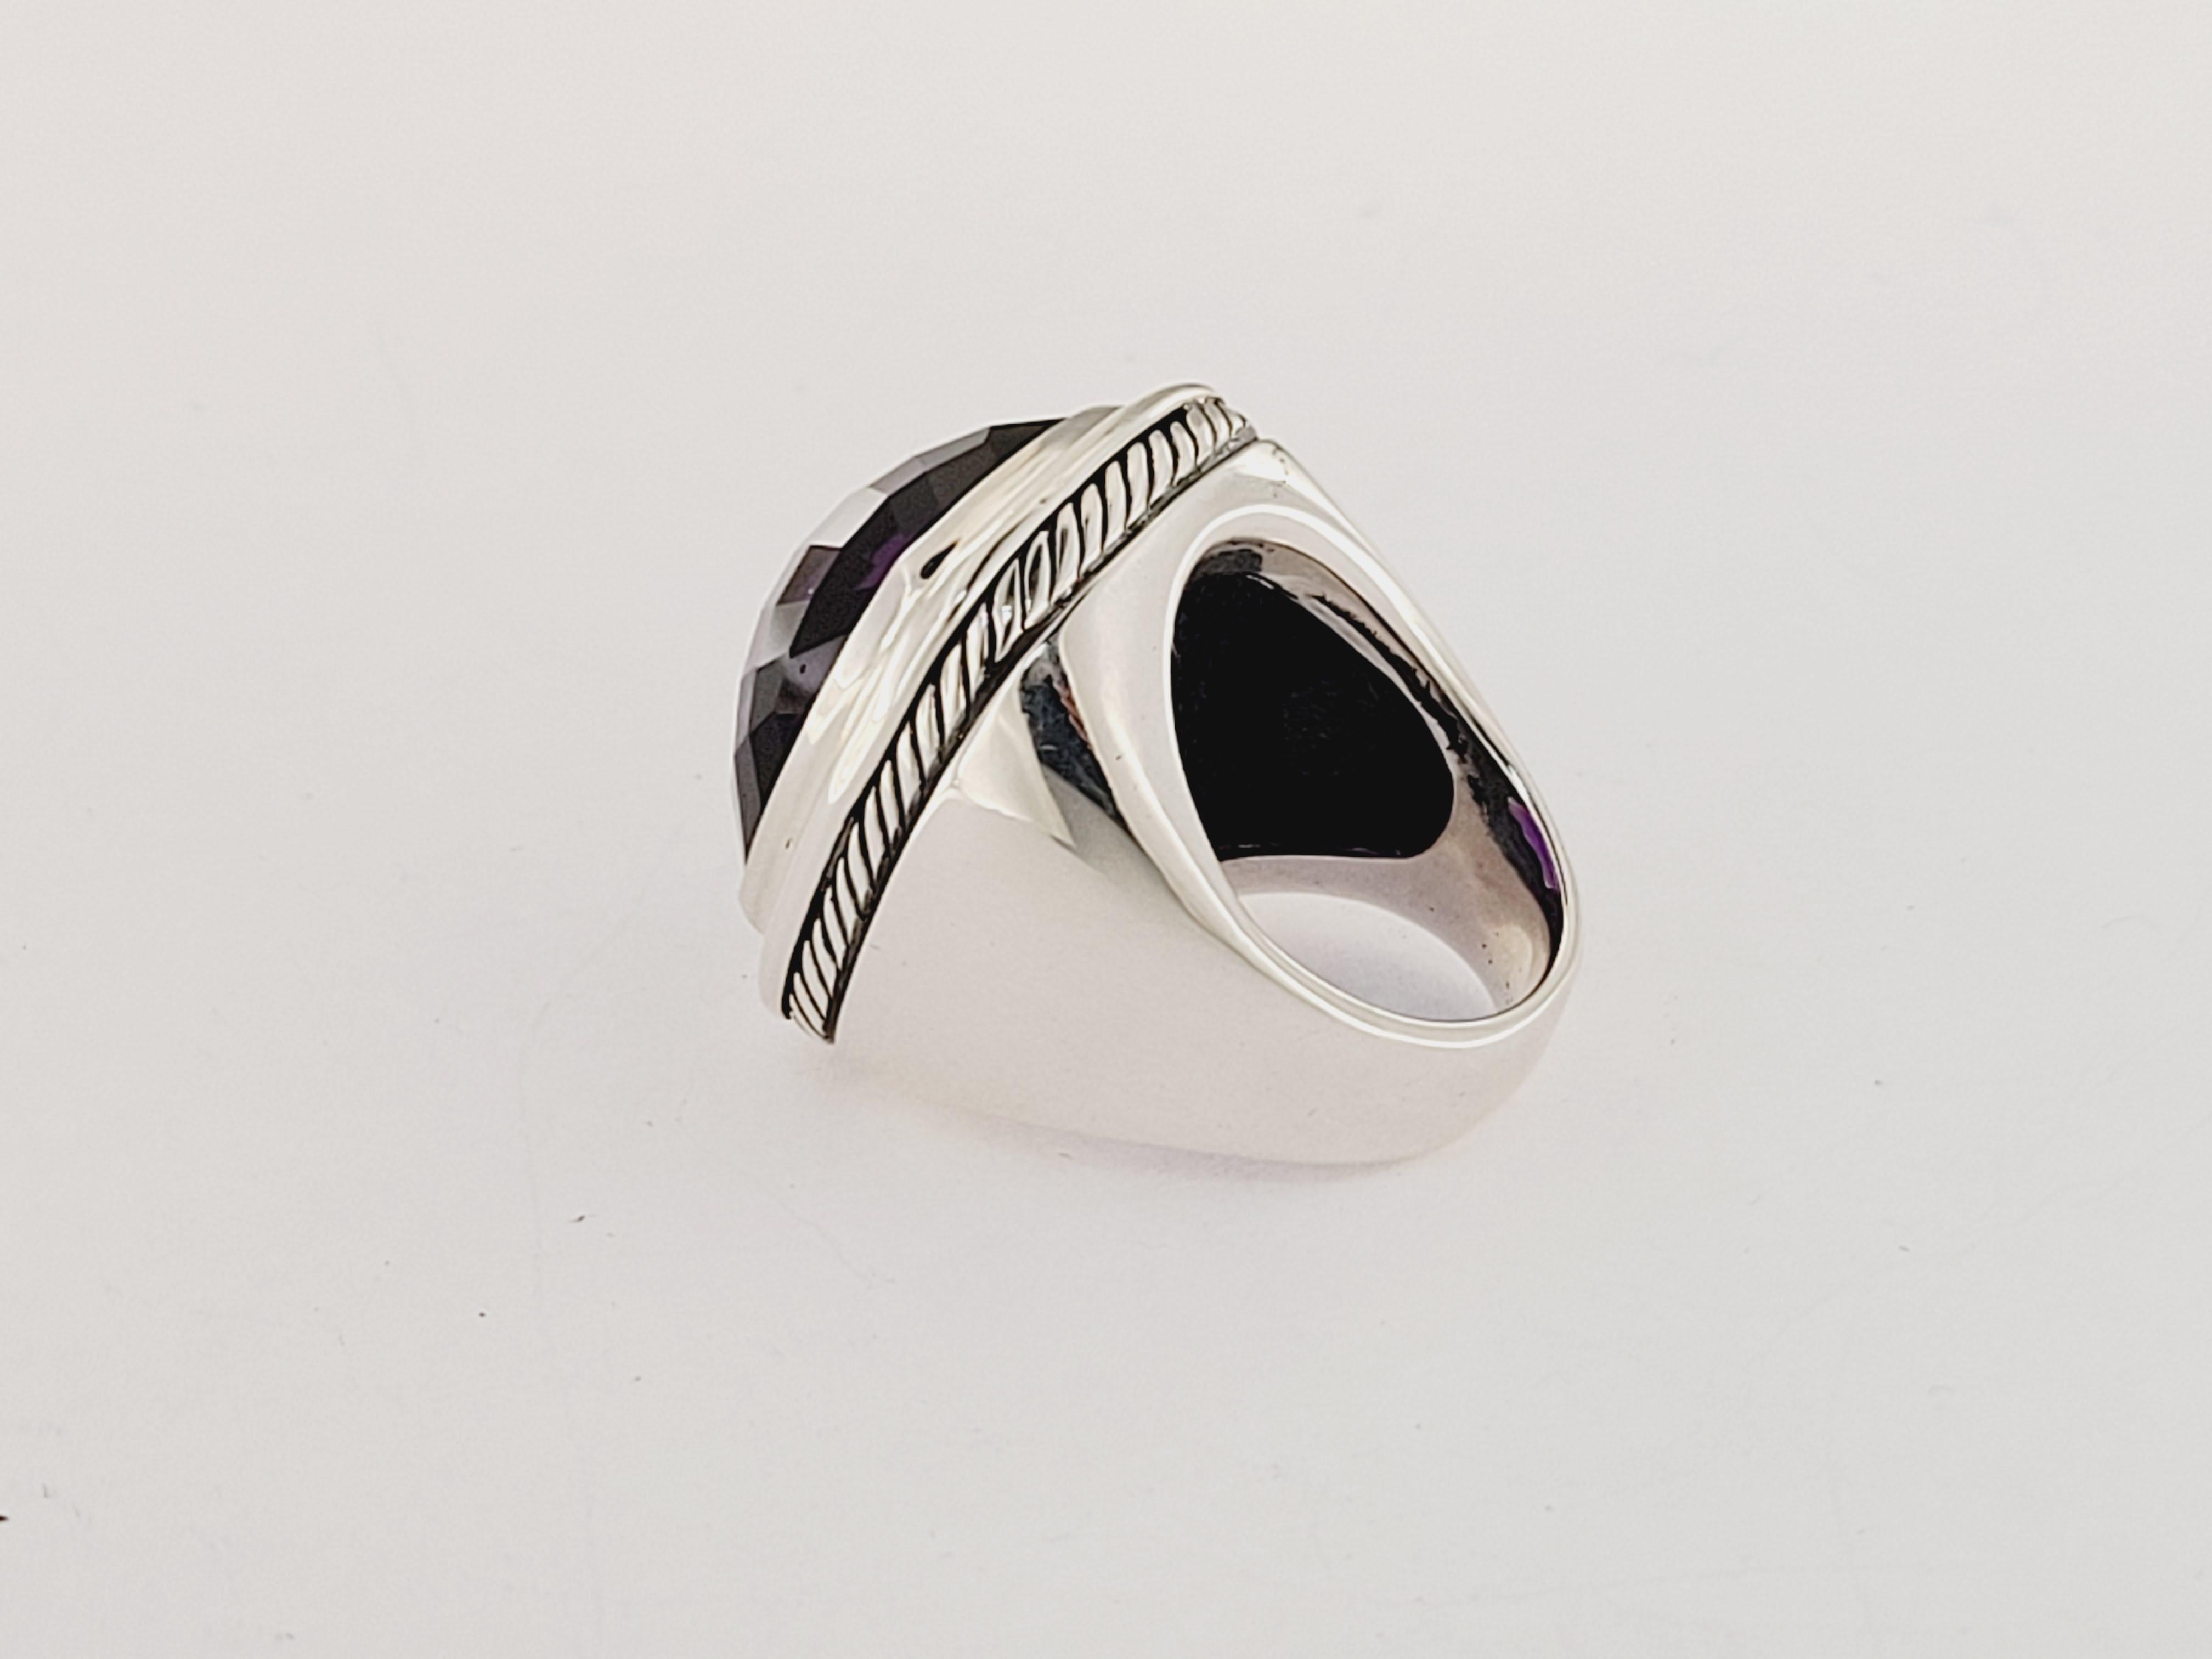 david yurman purple ring